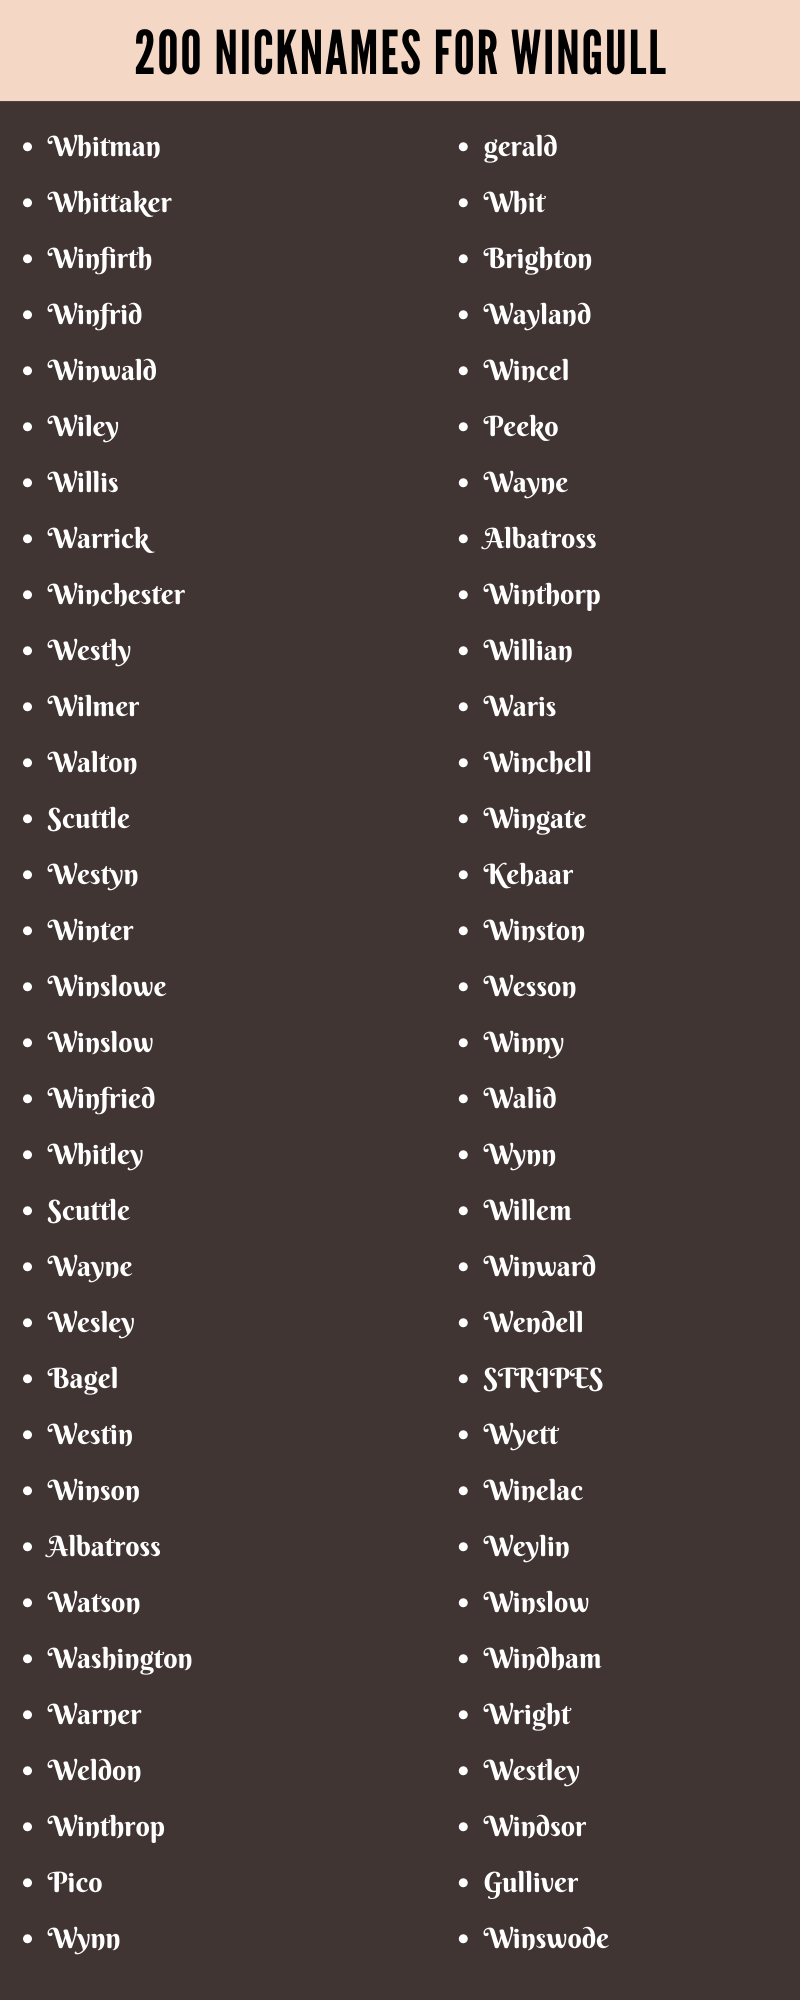 nicknames for wingull